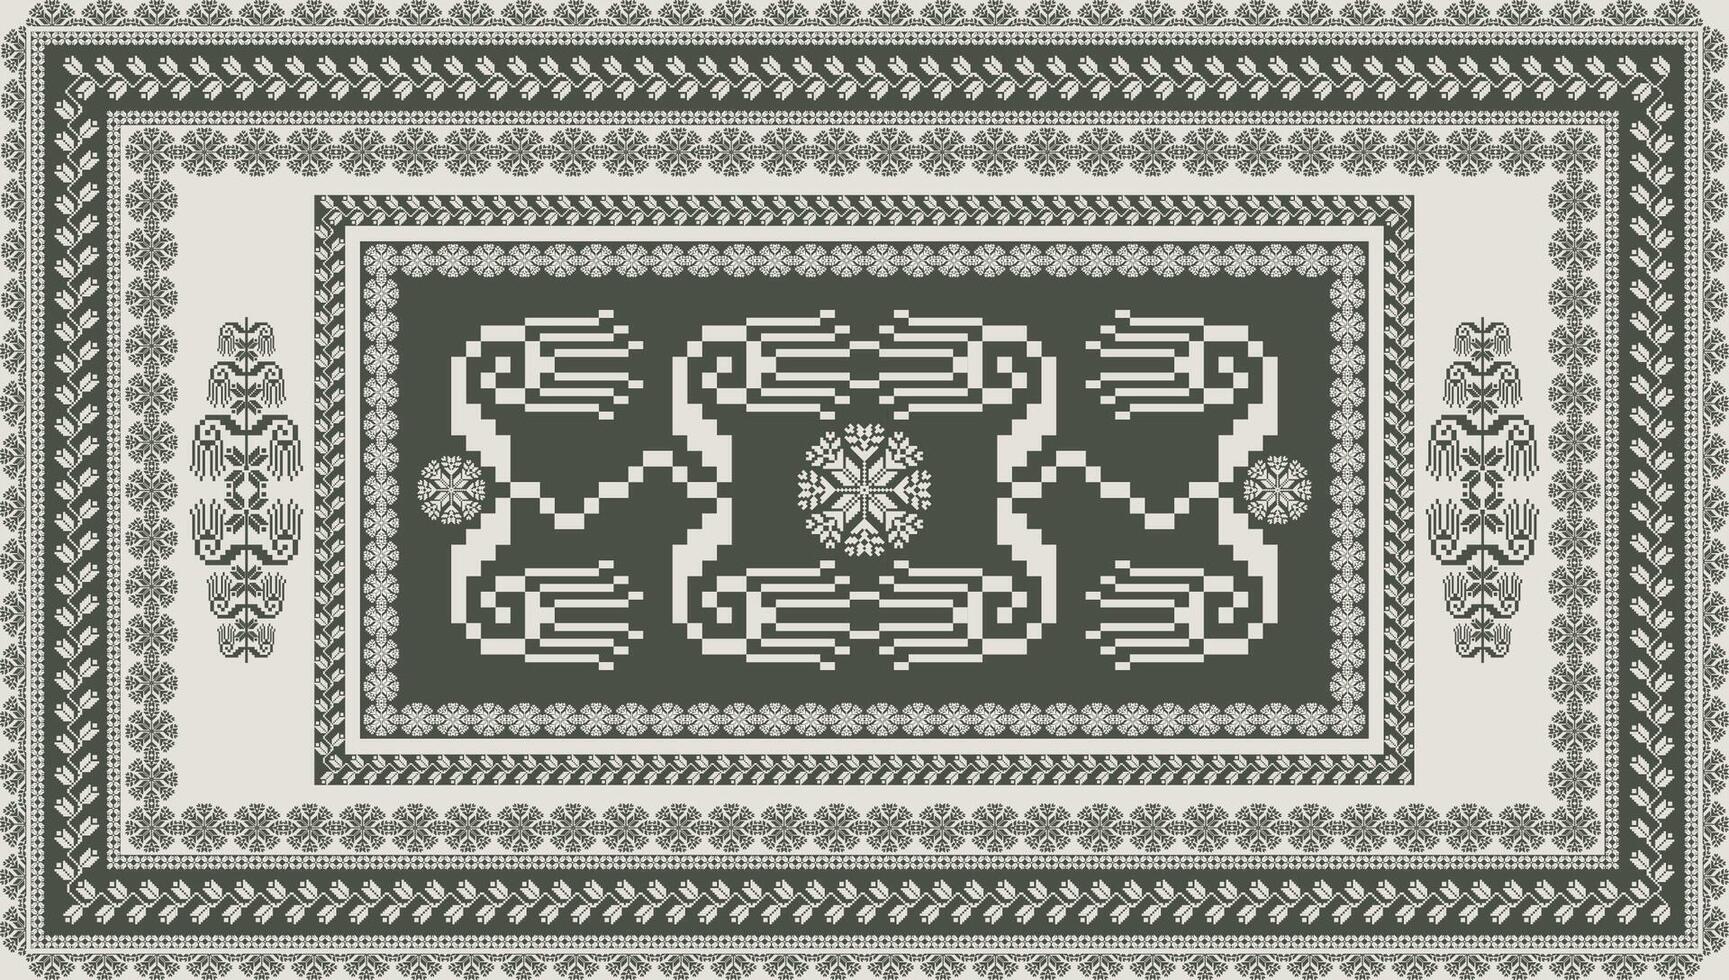 einfarbig grau ethnisch Blumen- Stickerei Muster. abstrakt ethnisch Blumen- Stickerei geometrisch einfarbig Muster. verwenden zum Teppich, Teppich, Mauer Tapisserie, Matte, Tischdecke, Polster, Kissen, usw. vektor